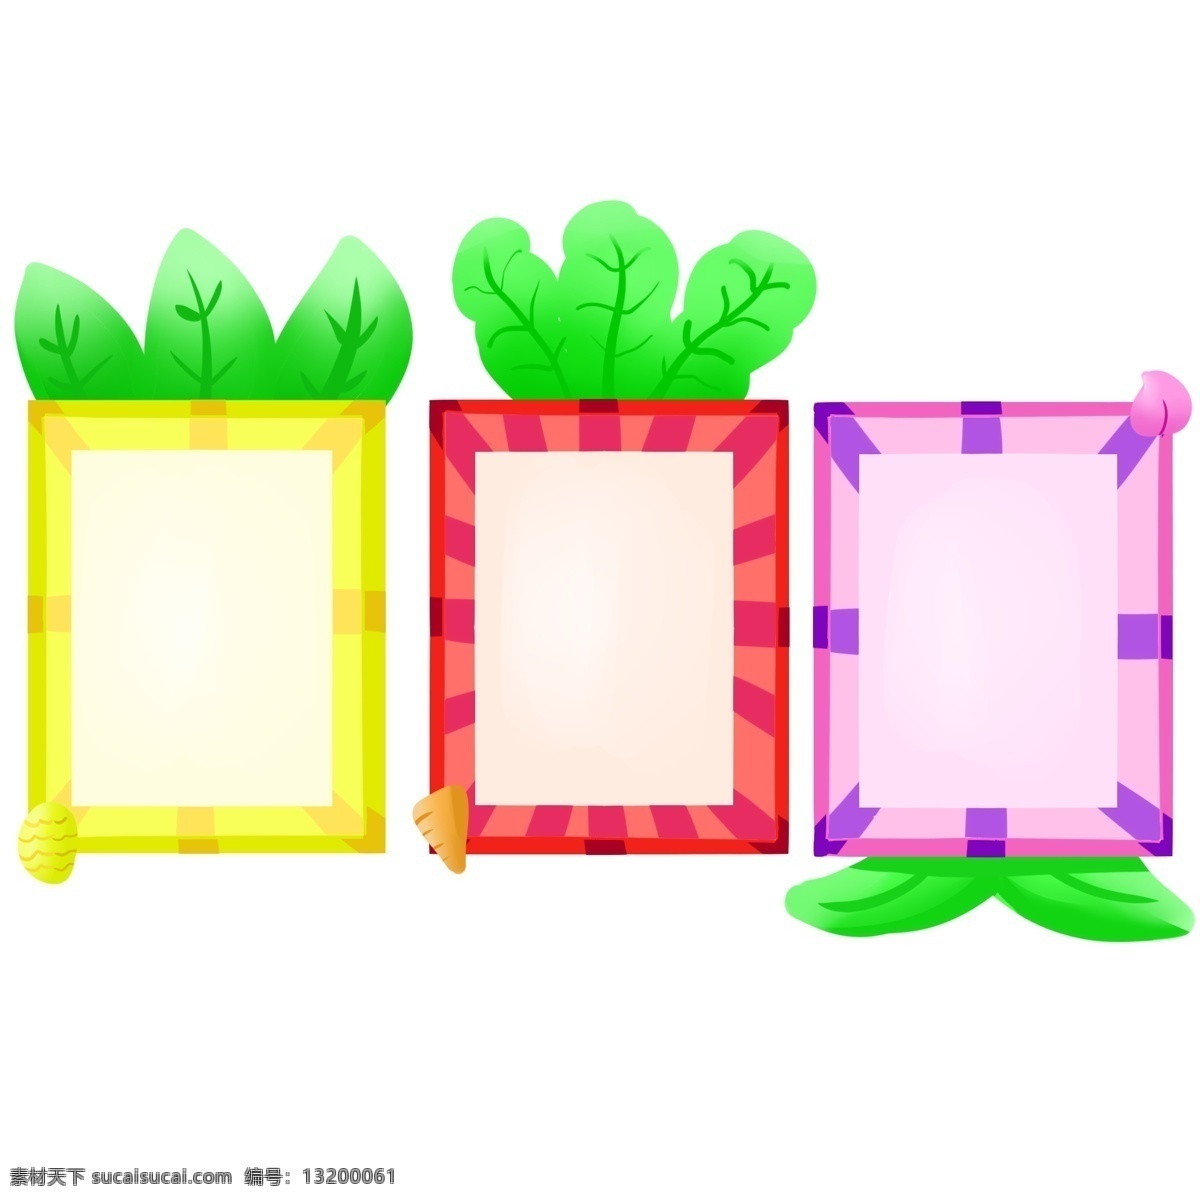 植物 相框 手绘 插画 植物相框 三个相框 漂亮的相框 立体相框 相框装饰 相框插画 可爱的相框 精美相框